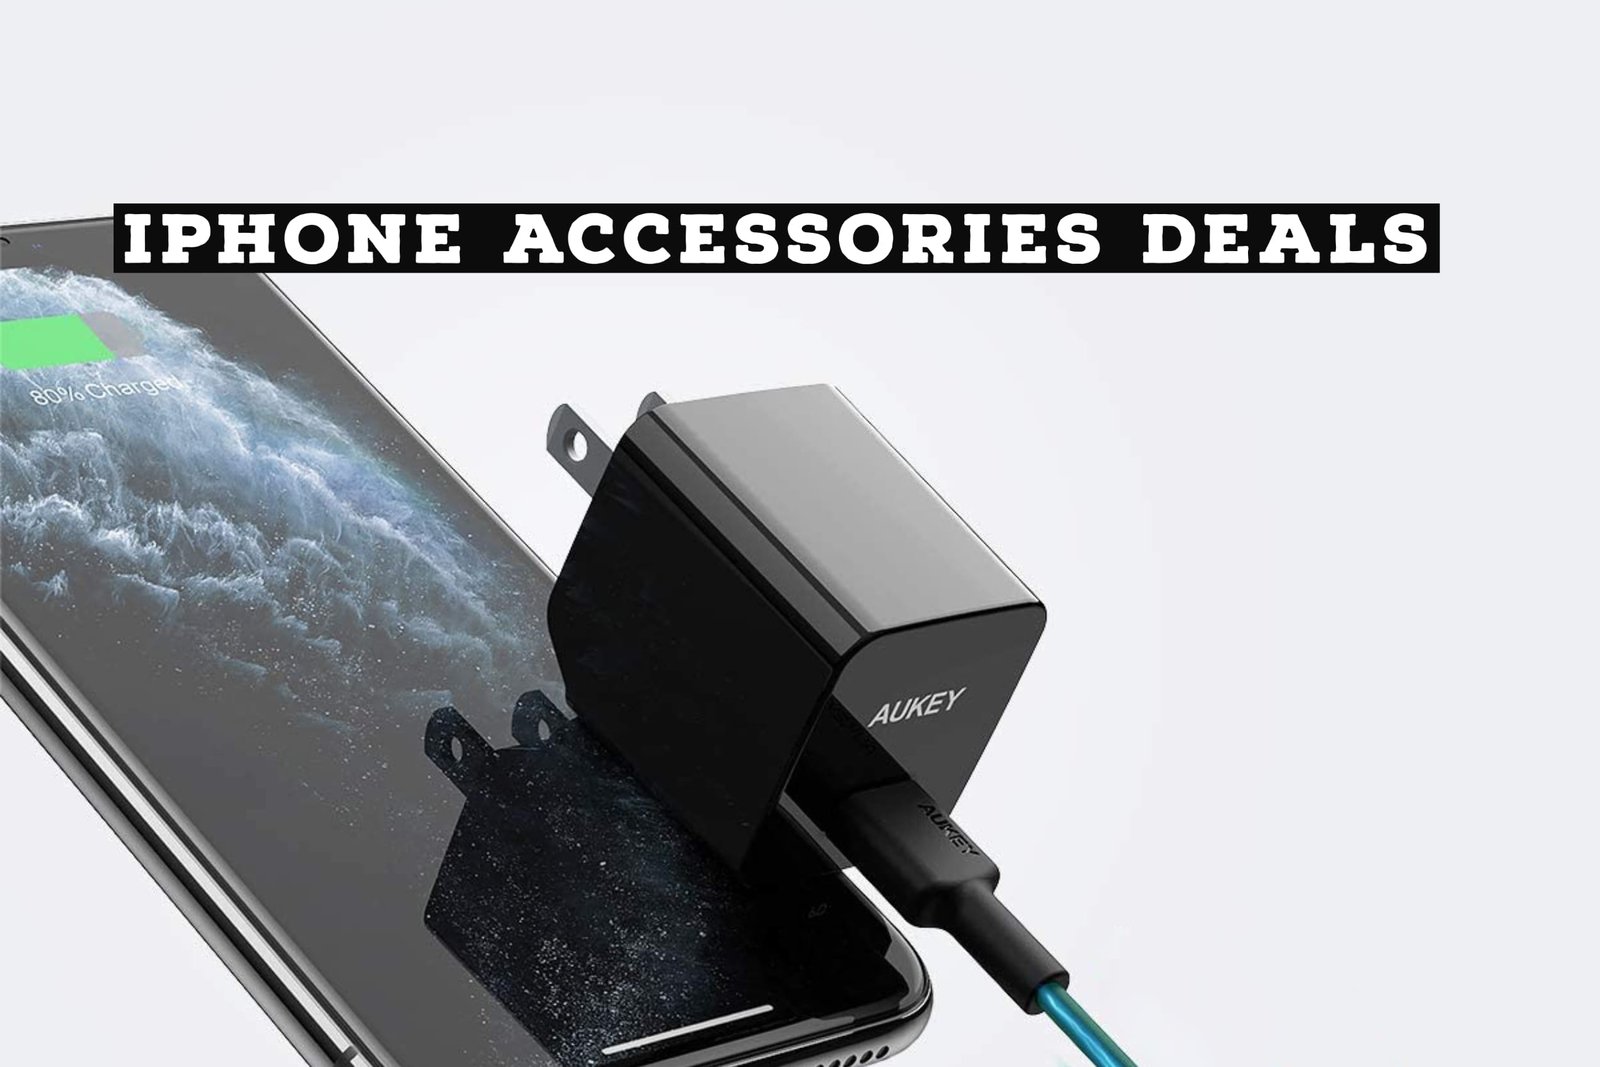 Smartphone Accessories Deals